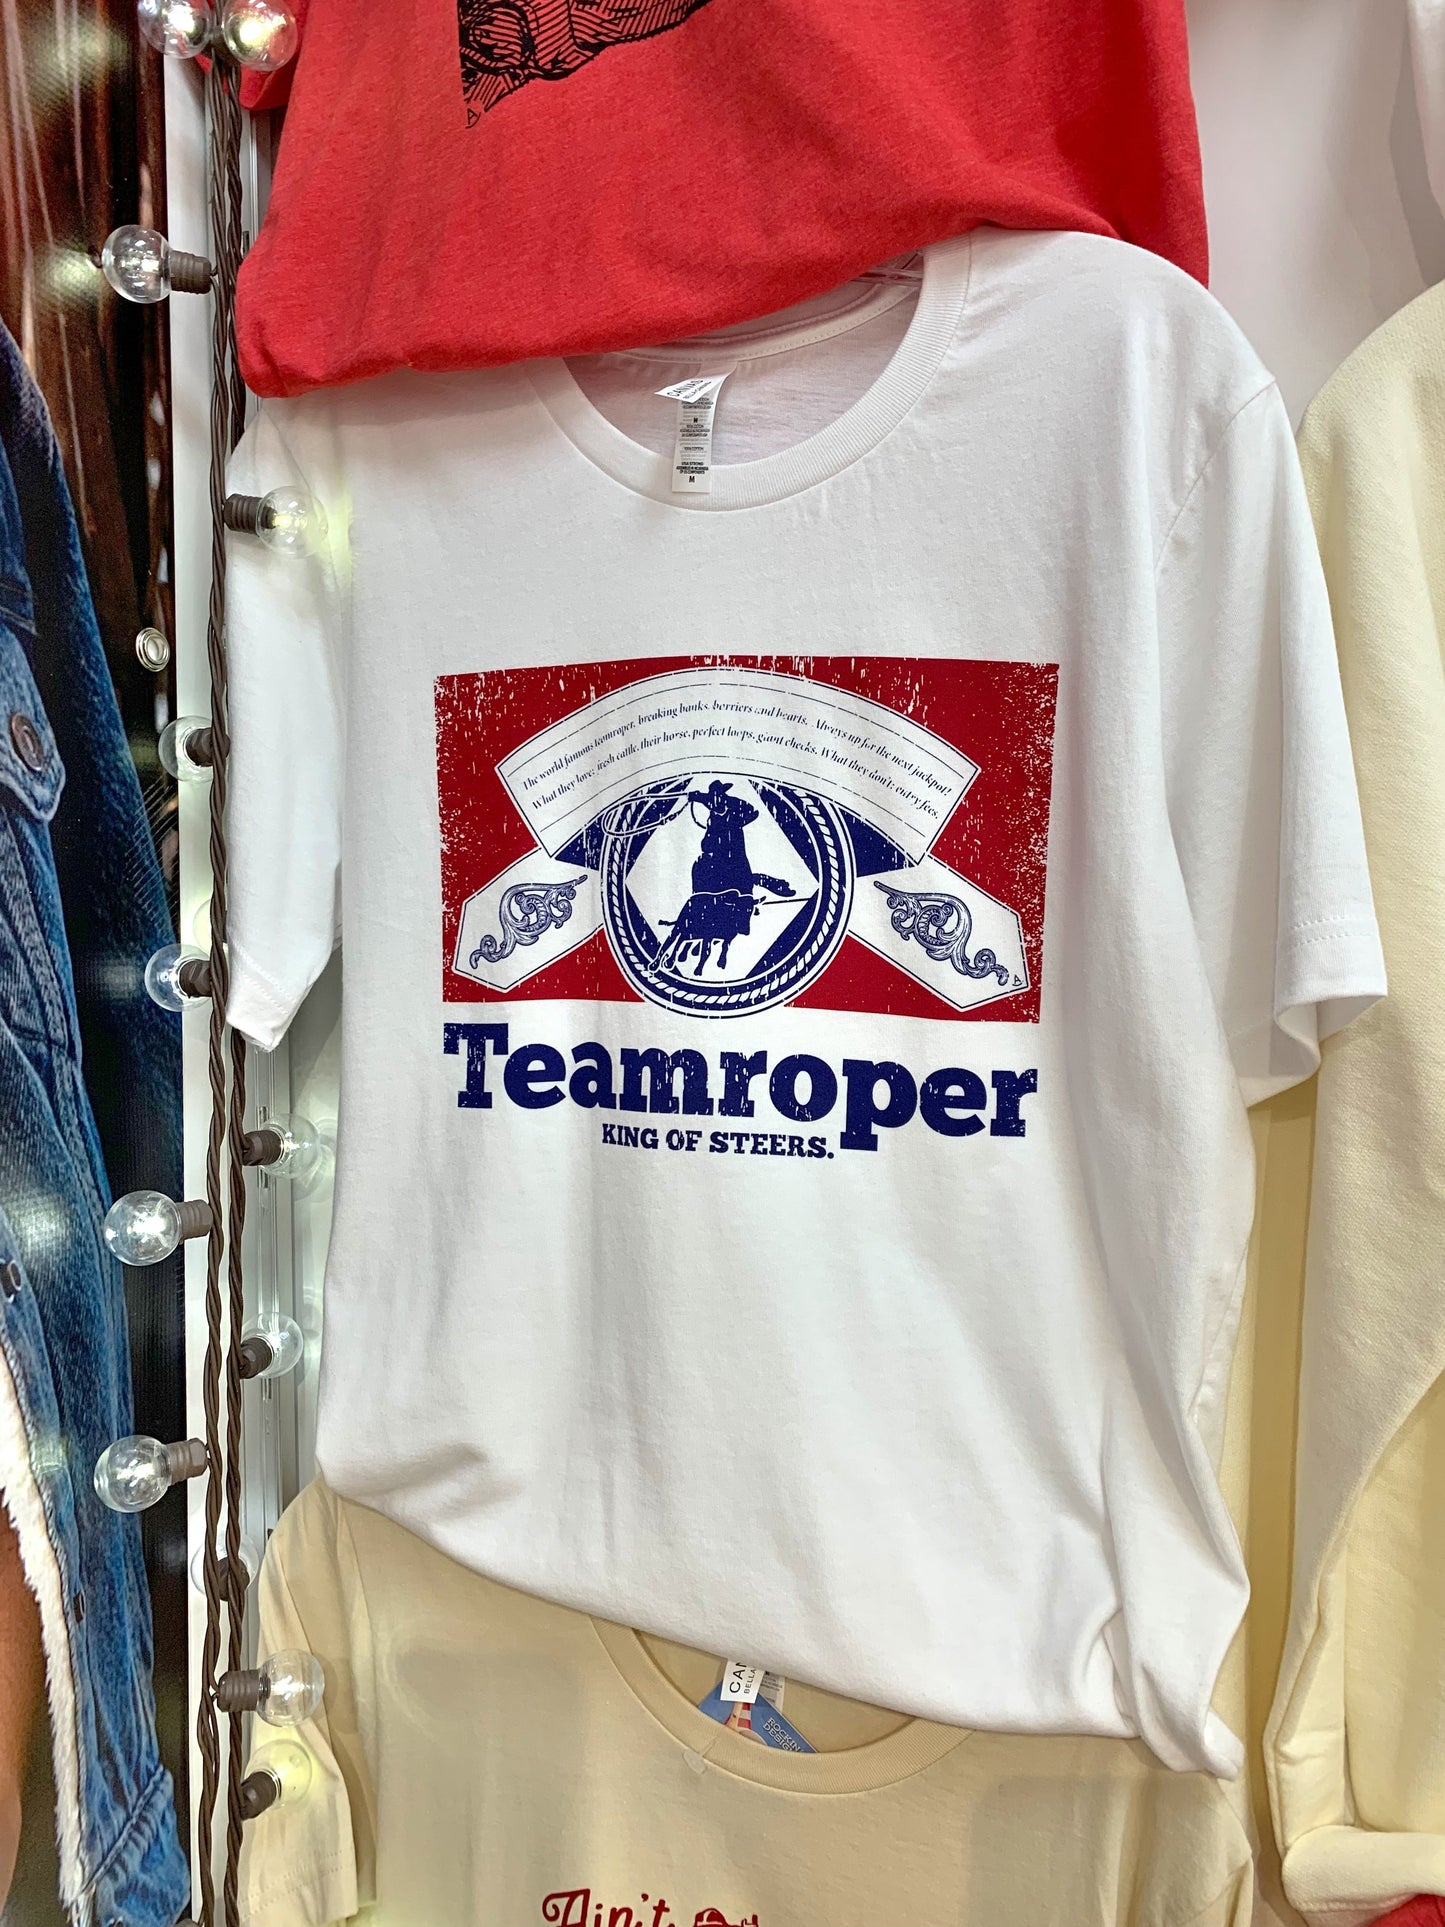 Teamroper - King of Steers t-shirt